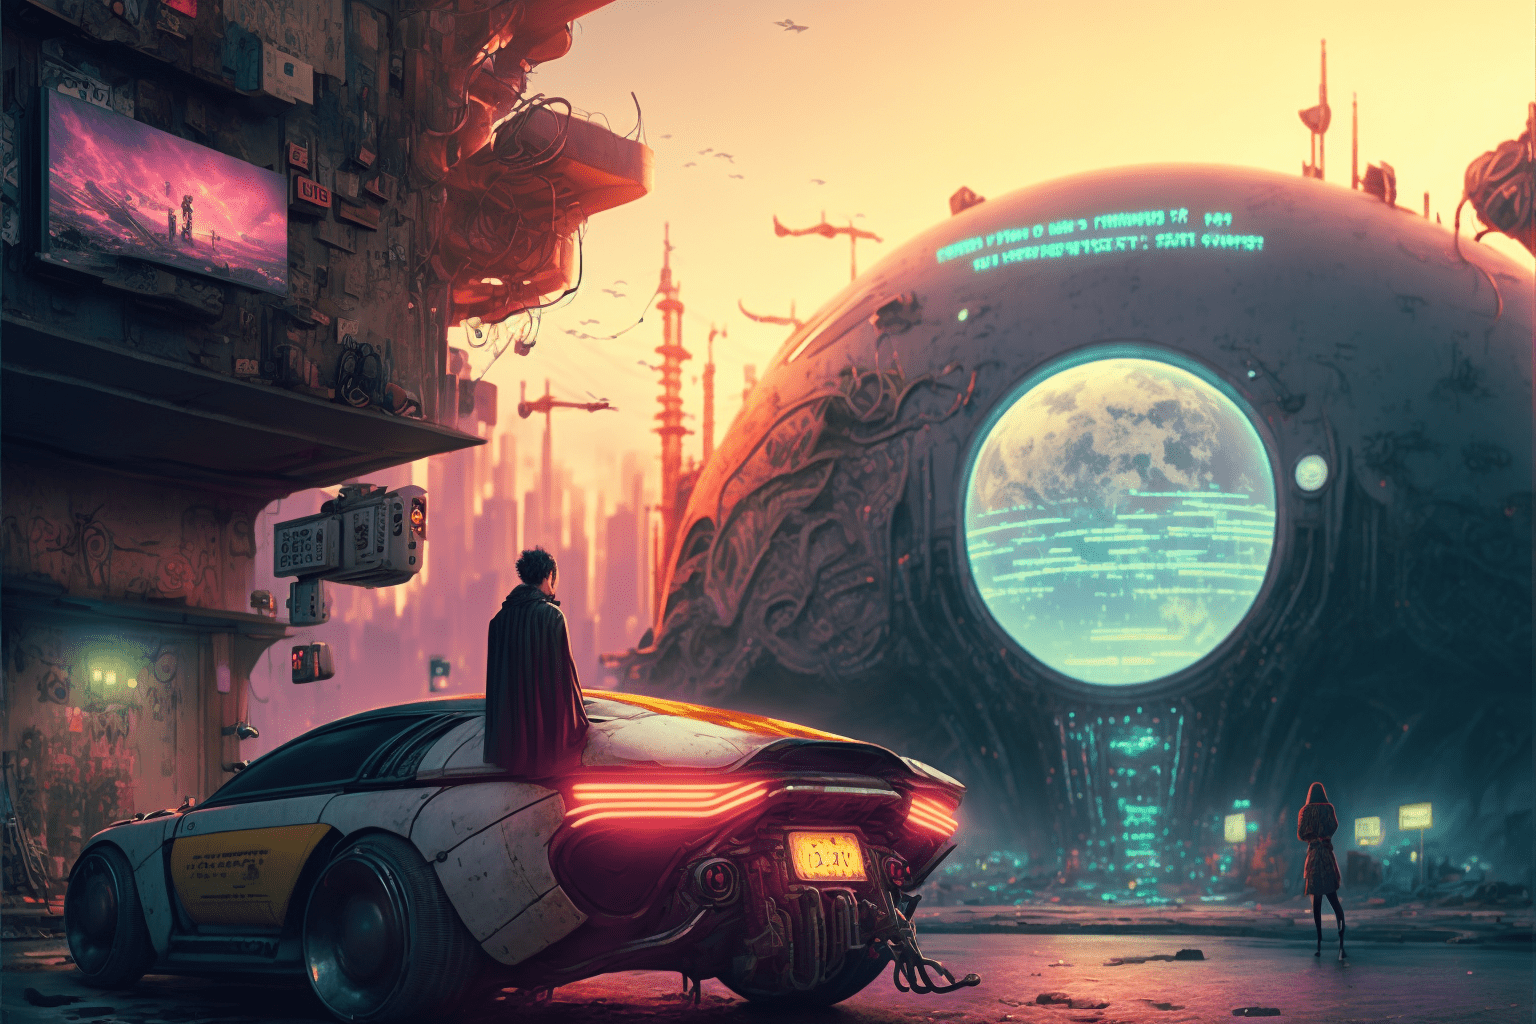 A man in a red cloak stands on the back of a futuristic car - Cyberpunk